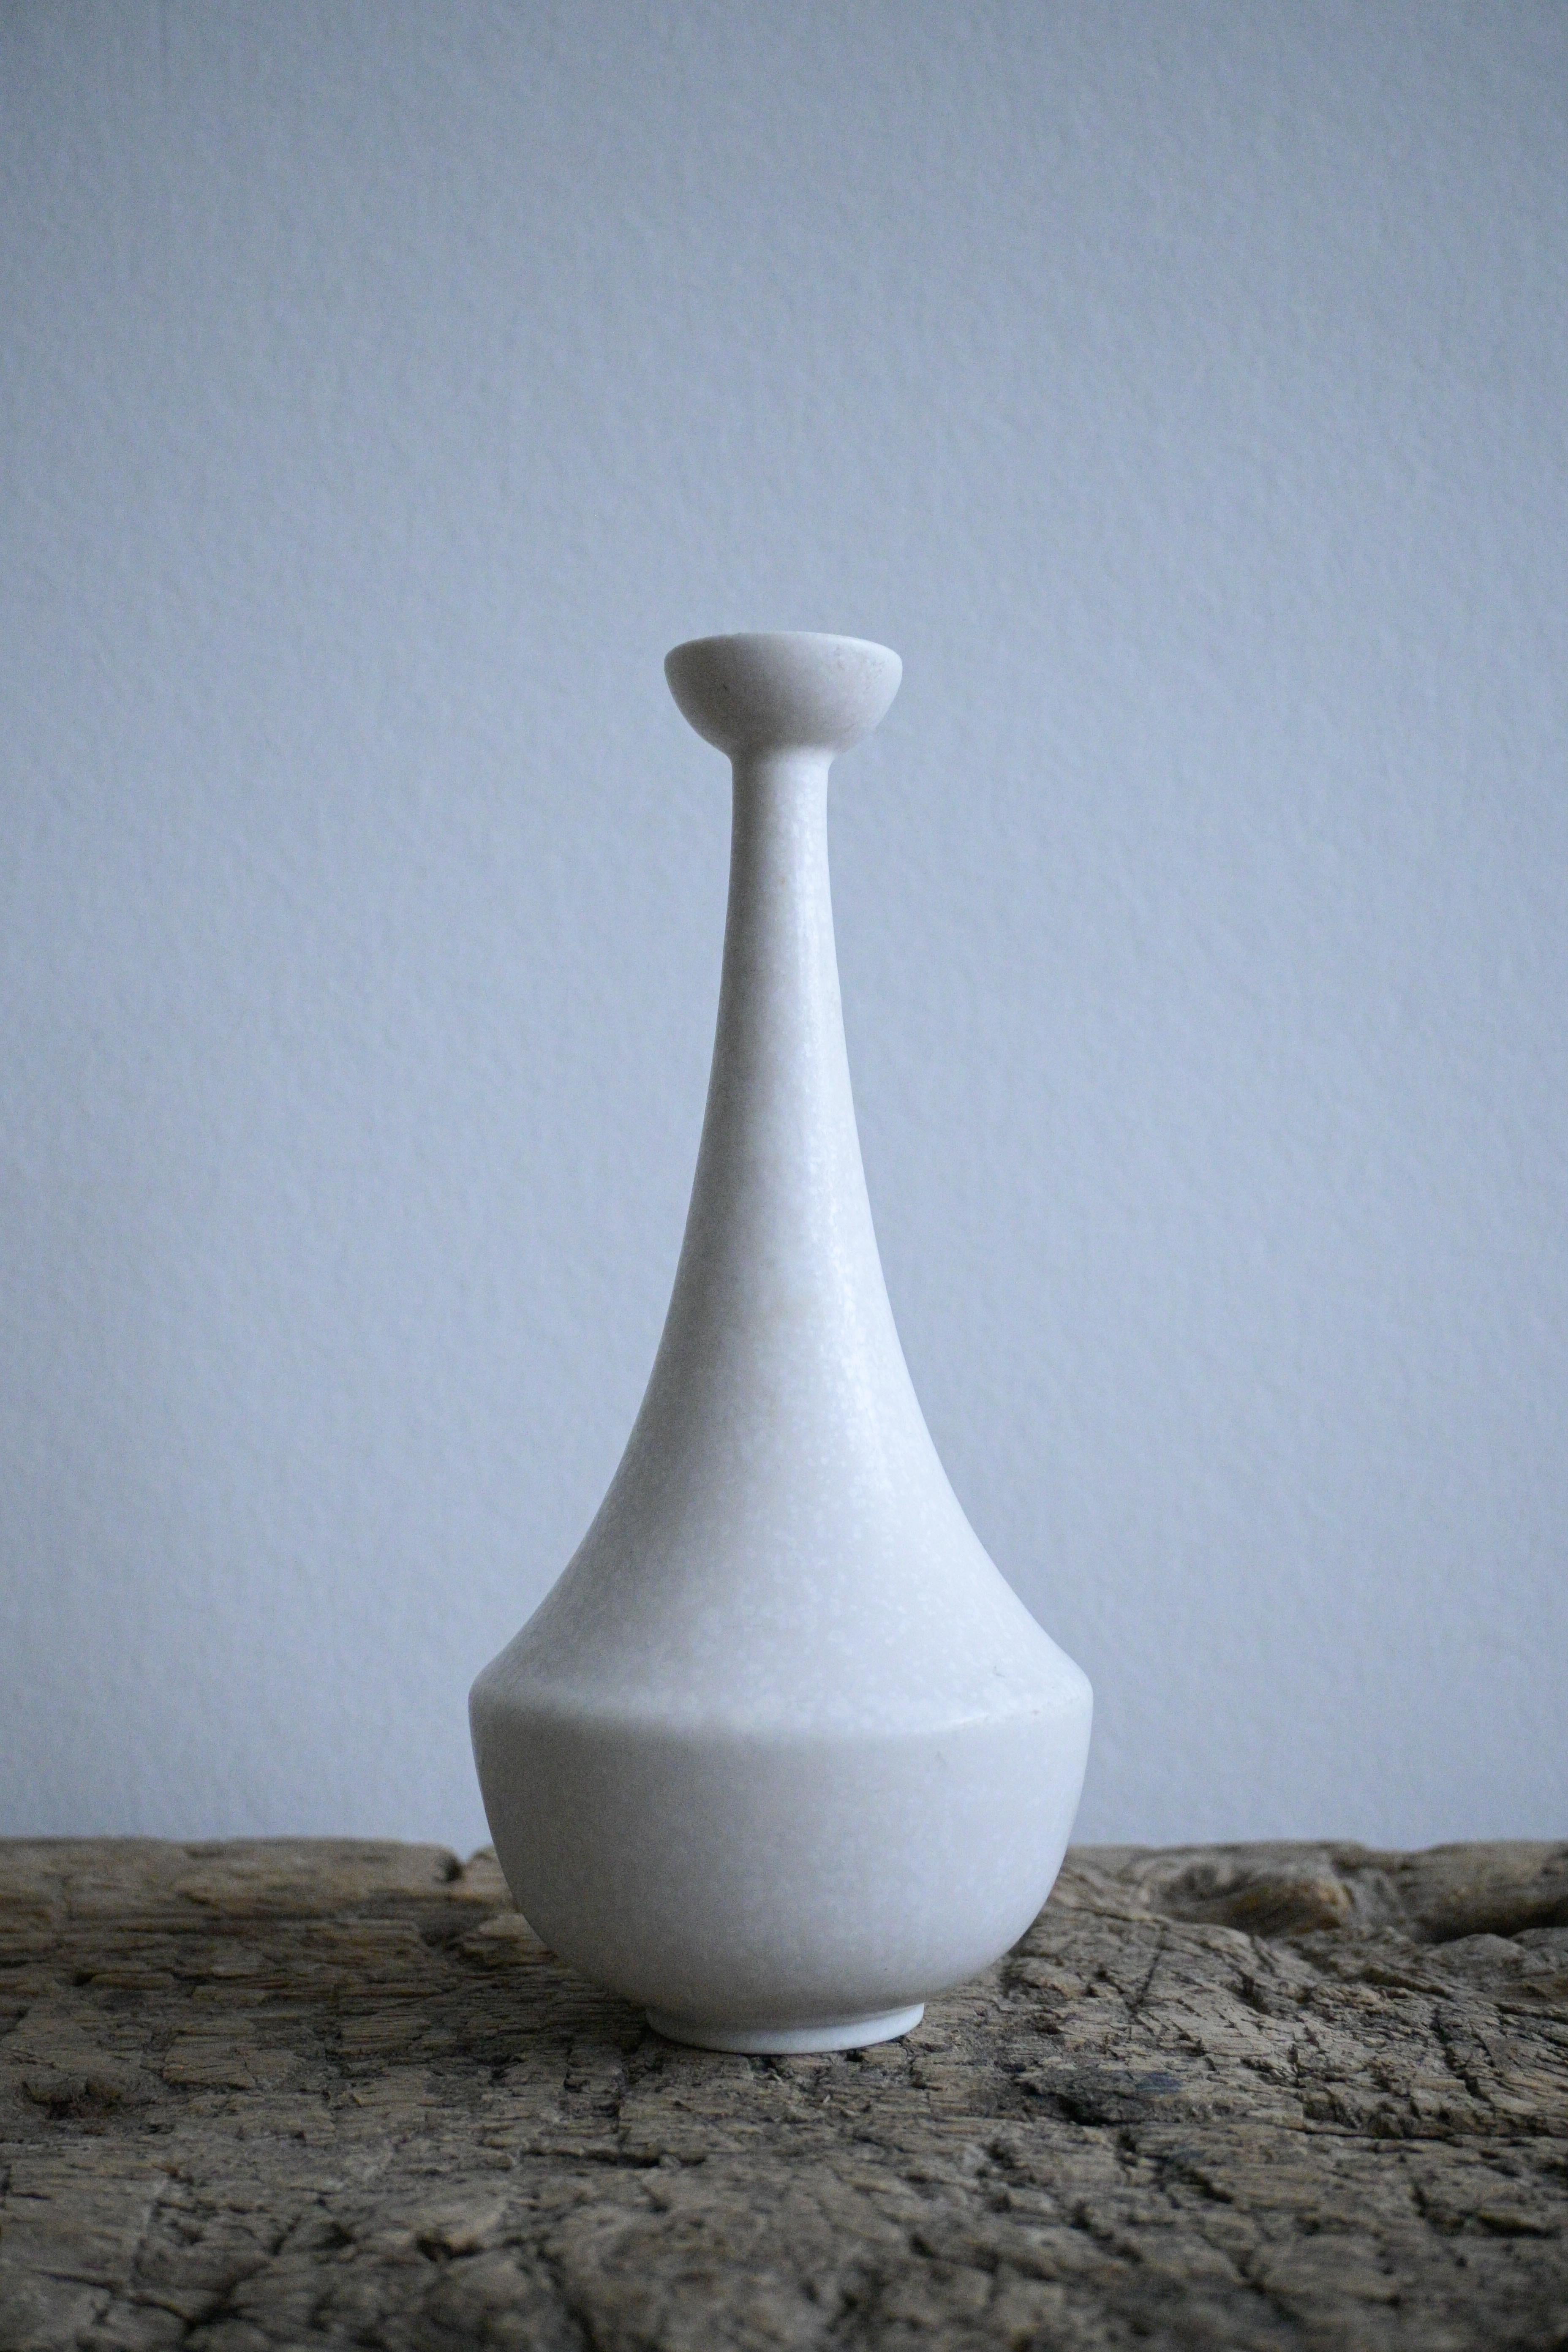 Seltene weiße Vase aus Eierschalen-Mimosen von Gunnar Nylund für Rörstrand, Schweden, 1950er Jahre

Die Vase ist als 1. Qualität gekennzeichnet und befindet sich in ausgezeichnetem Zustand.


Gunnar Nylund (1904-1997) war ein renommierter